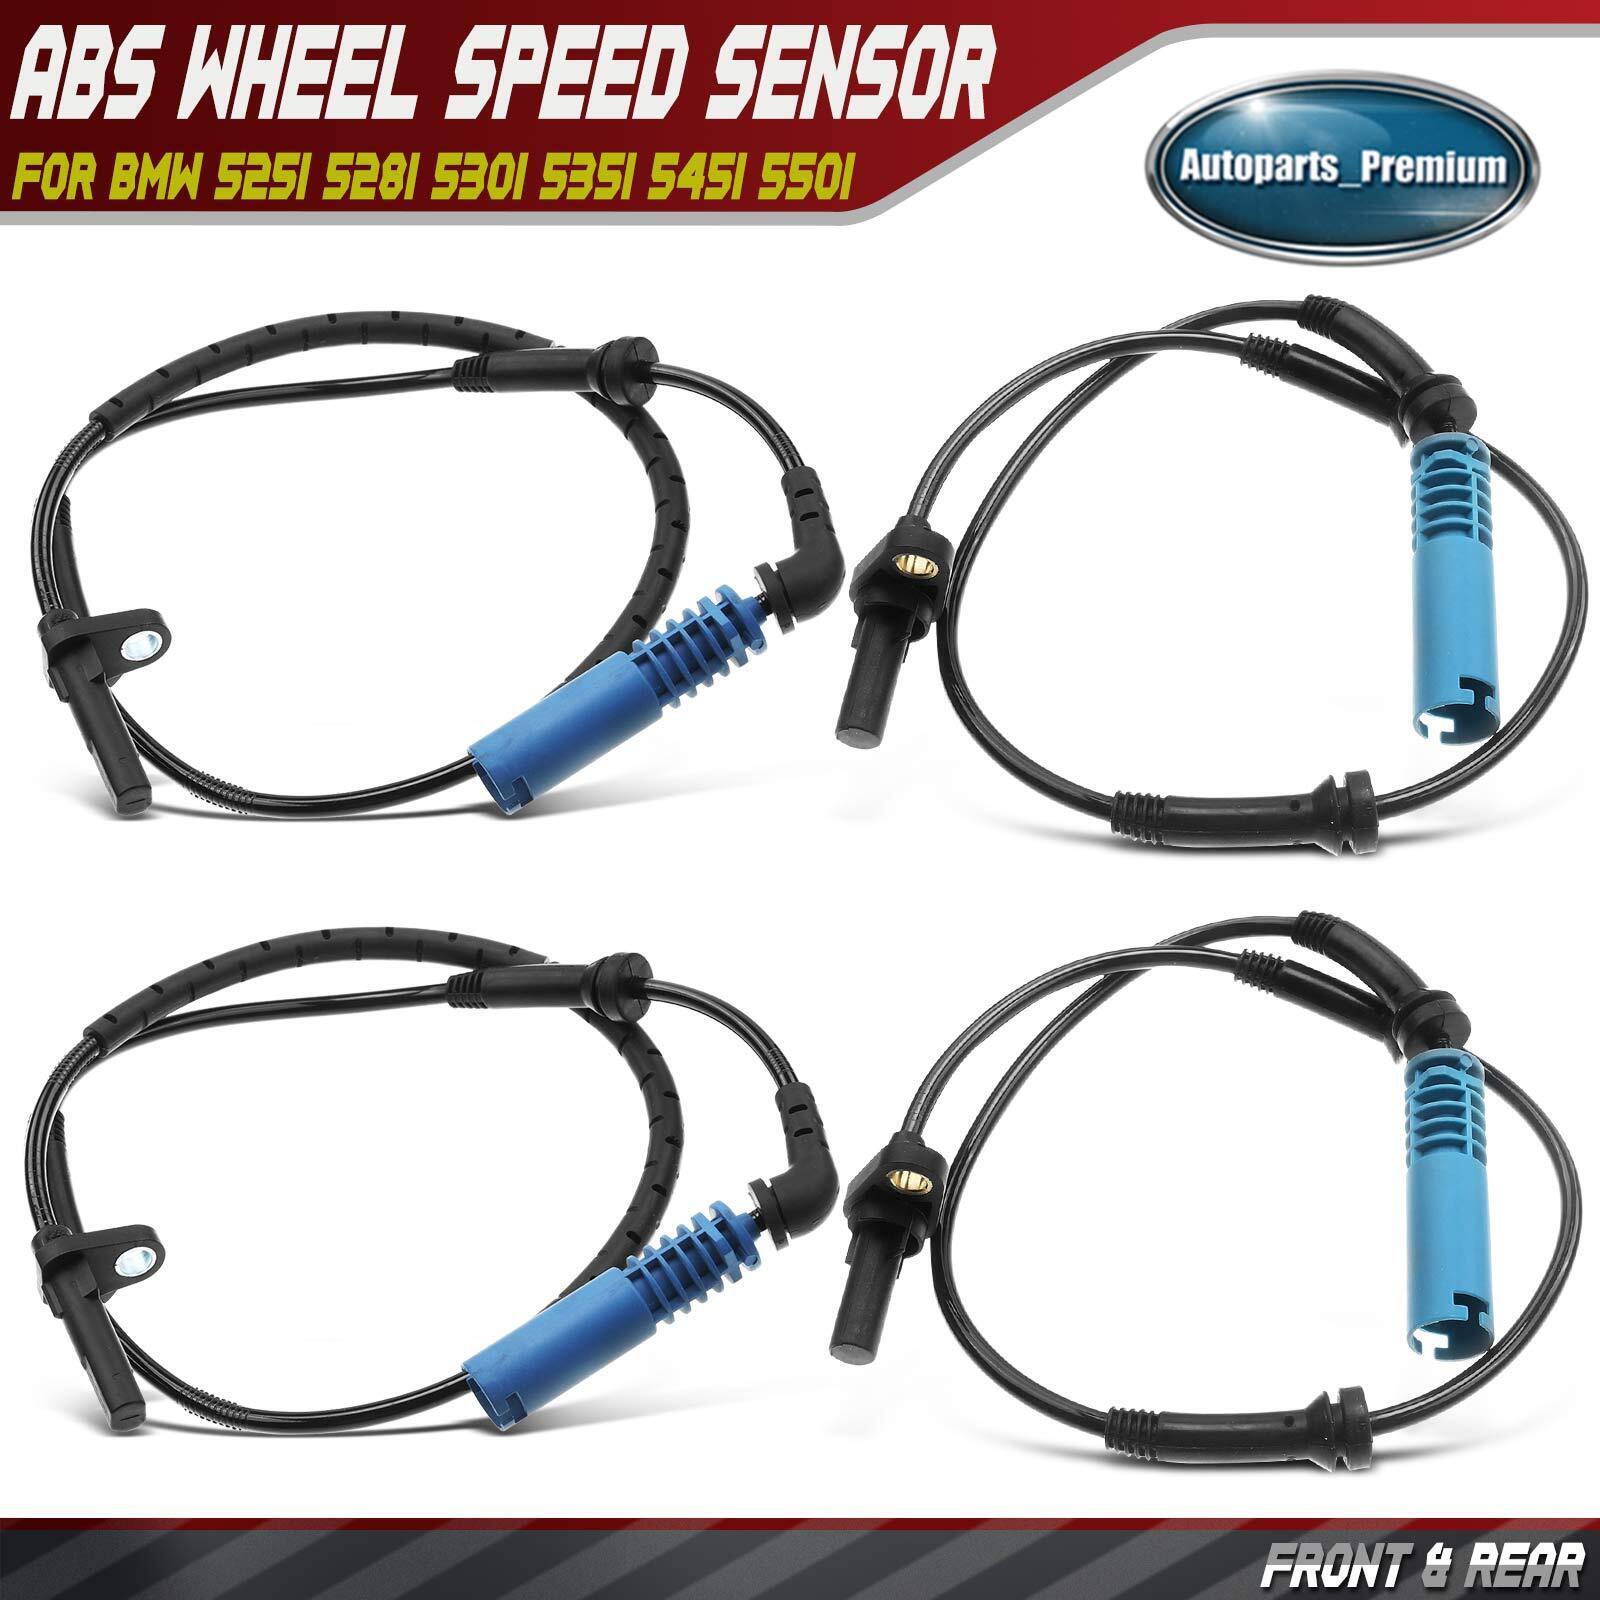 4Pcs Front & Rear ABS Wheel Speed Sensor for BMW 525i 528i 530i 535i 545i 550i